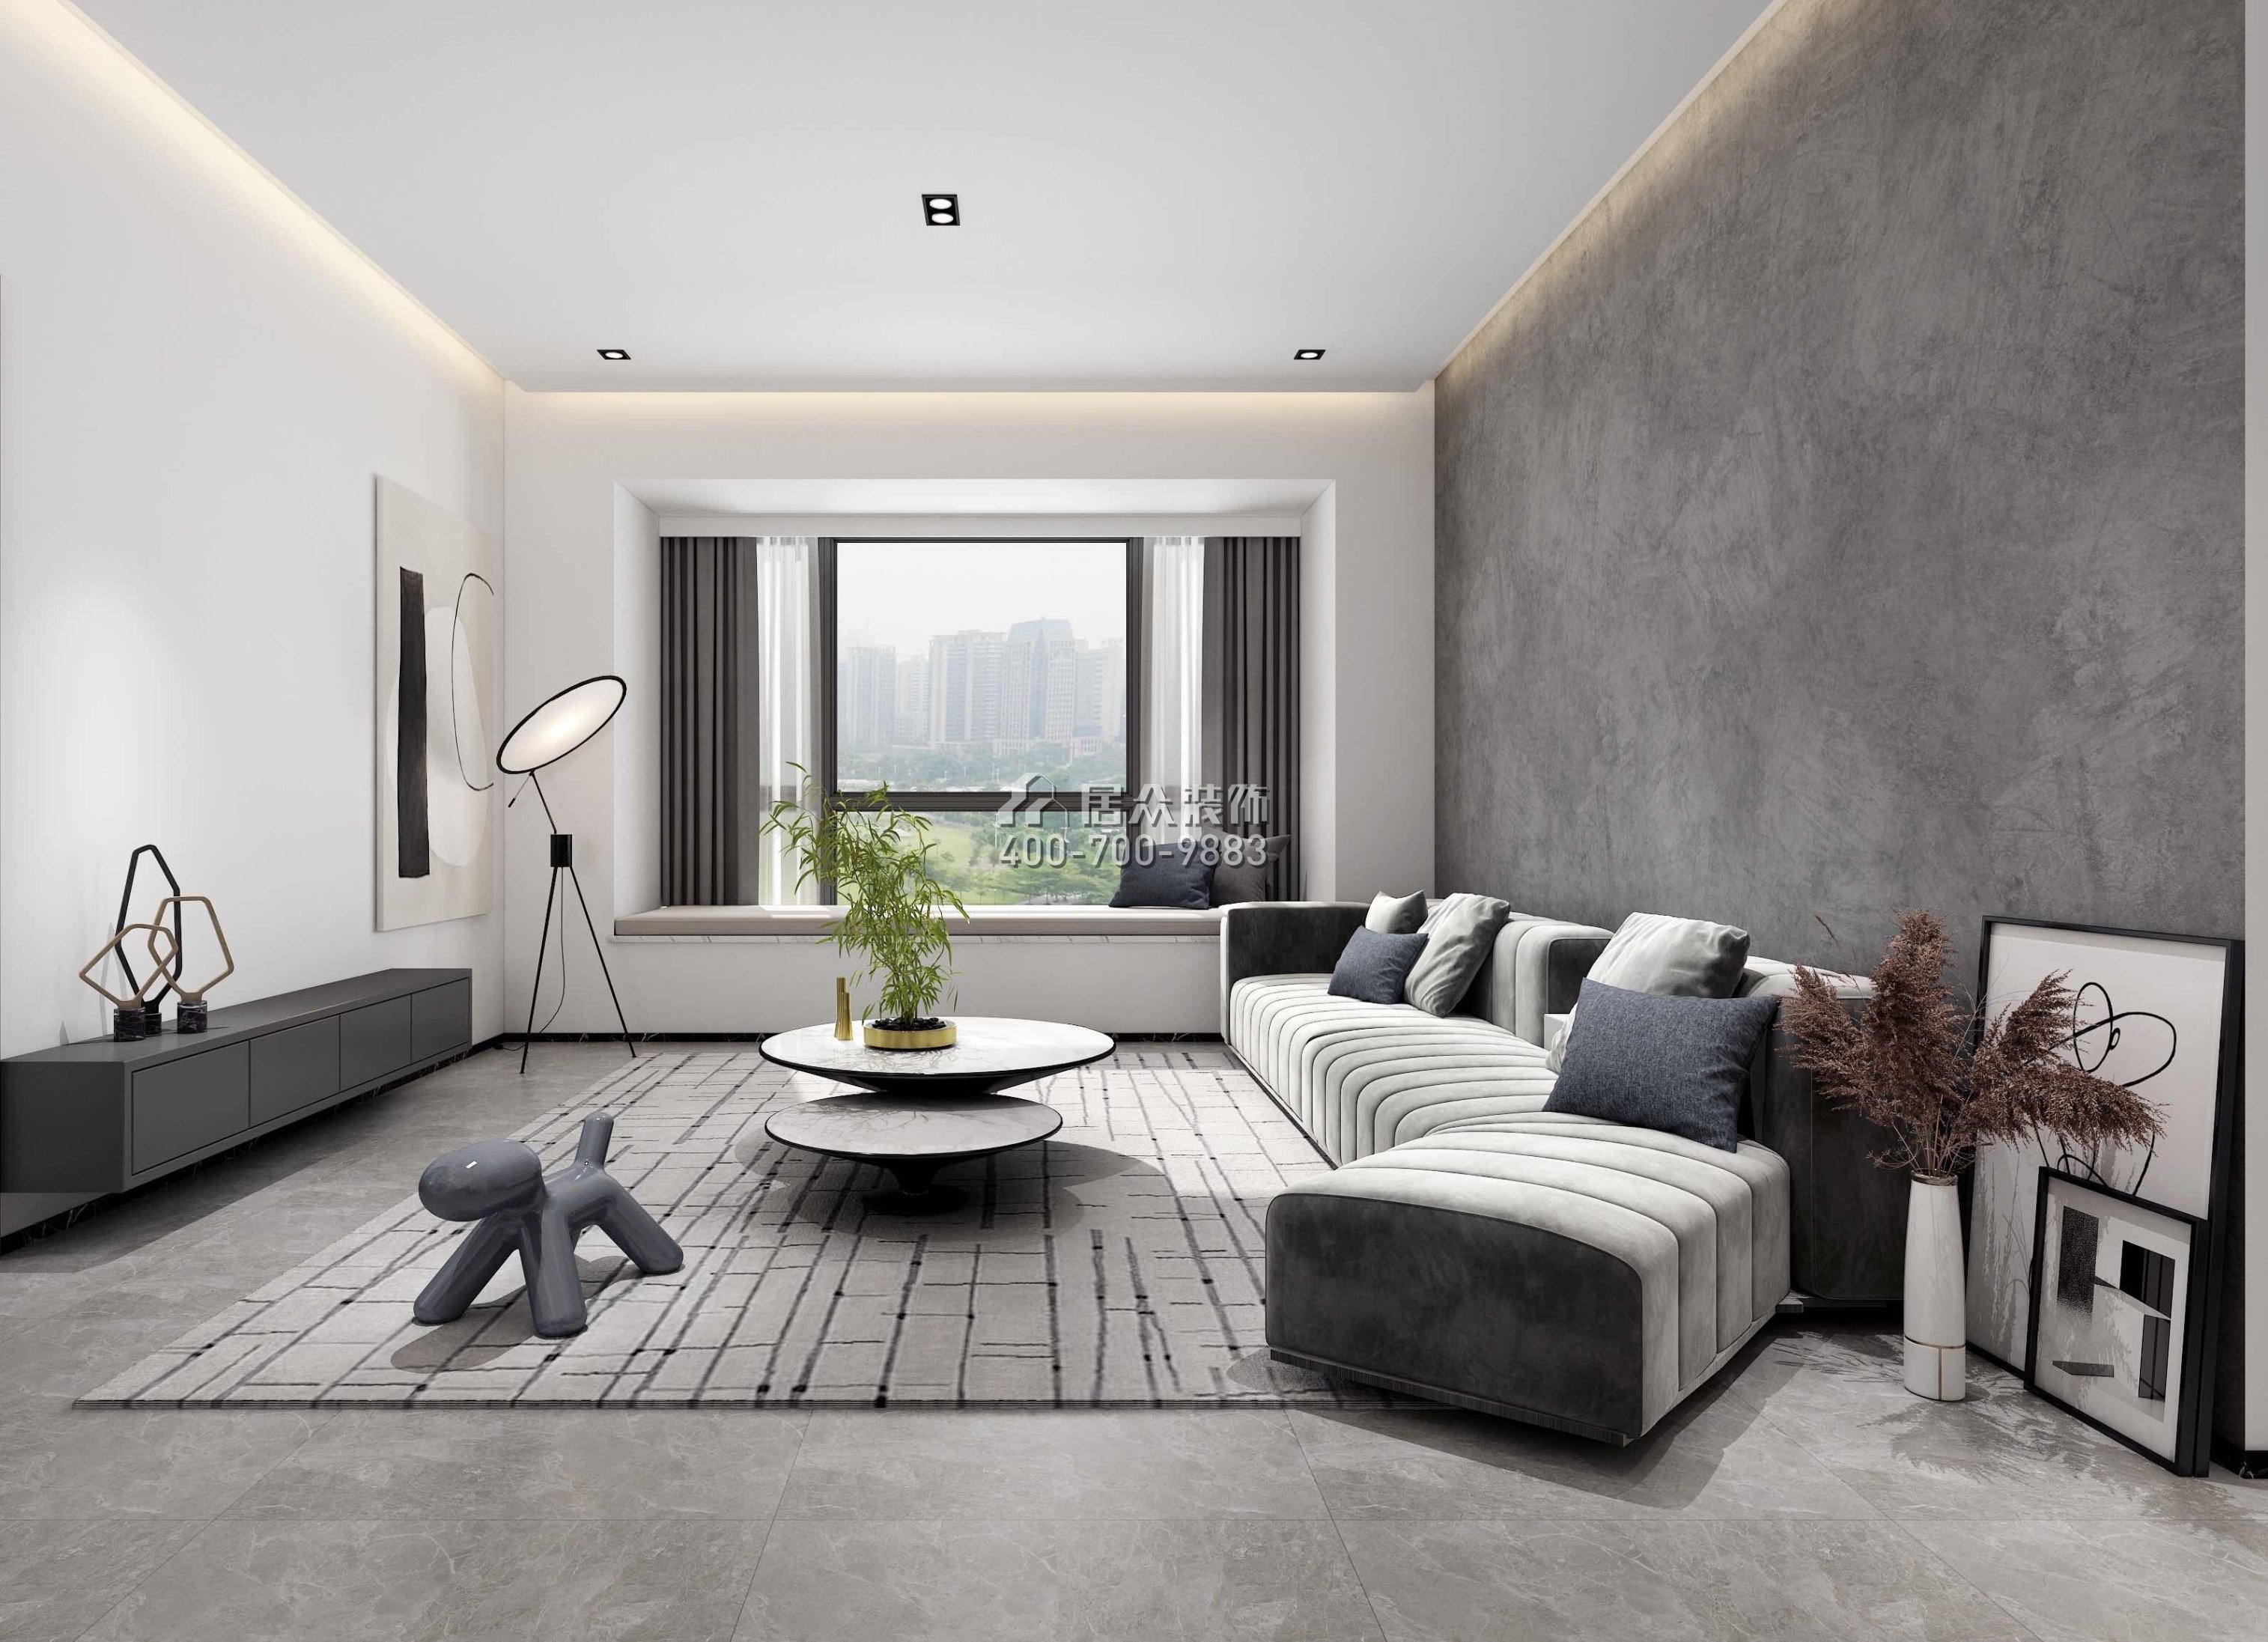 豪方天际156平方米现代简约风格平层户型客厅装修效果图